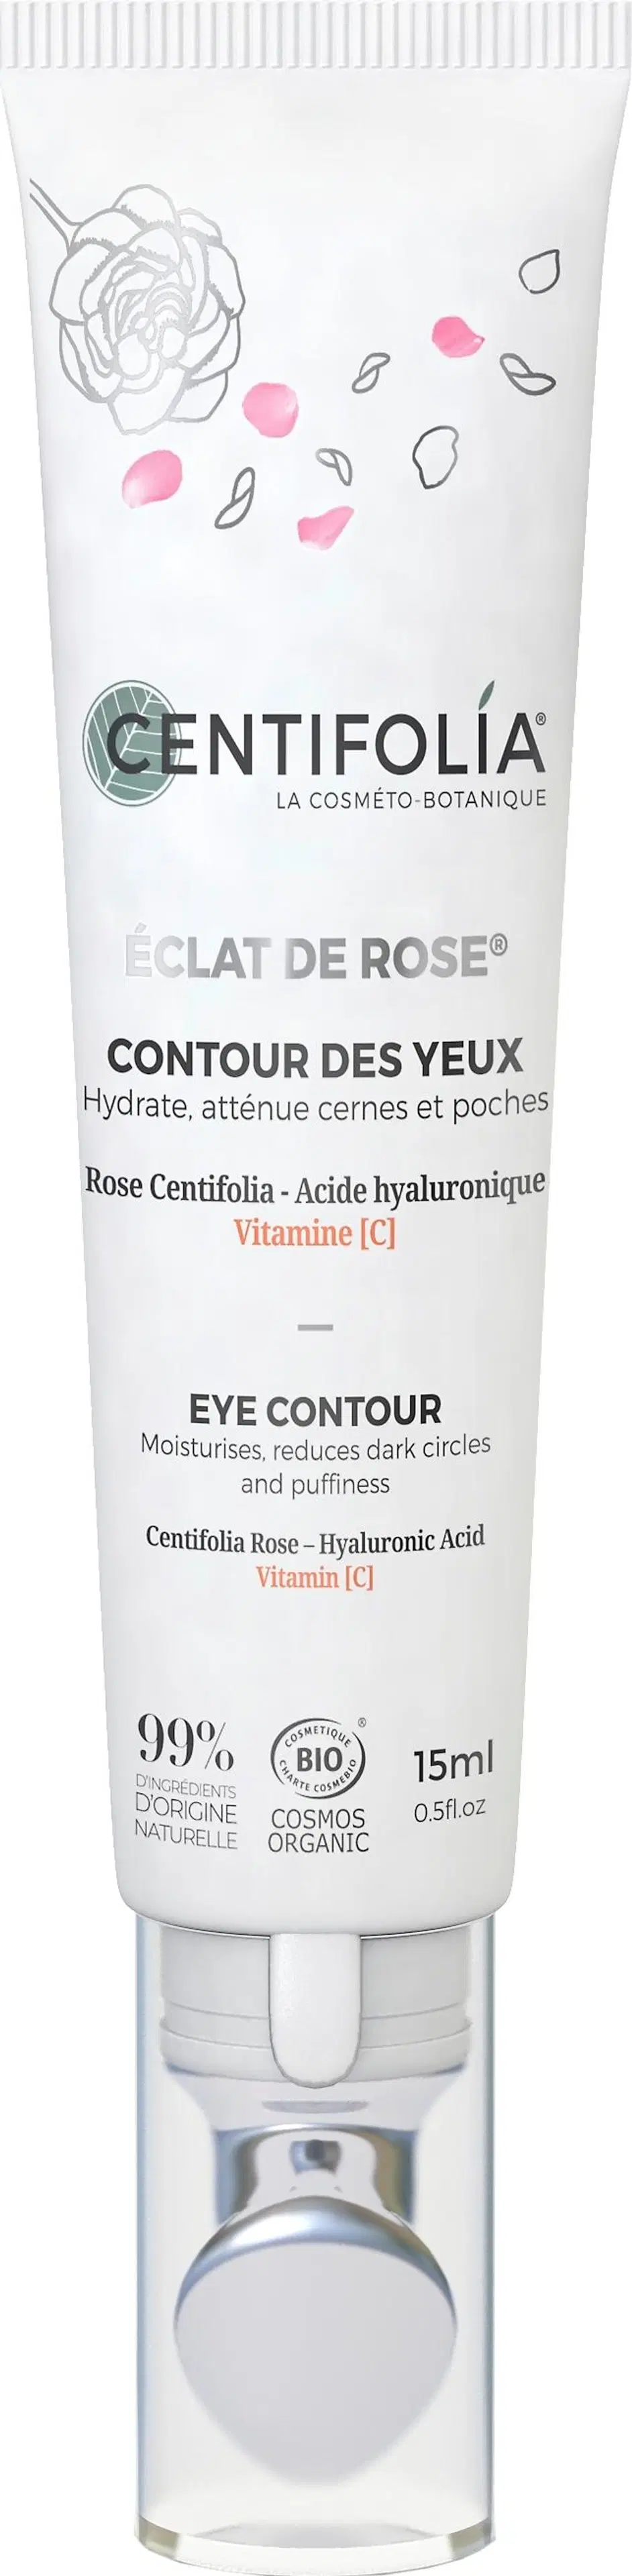 Centifolia Eclat de rose Eye contour cream silmänympärysvoide 15 ml